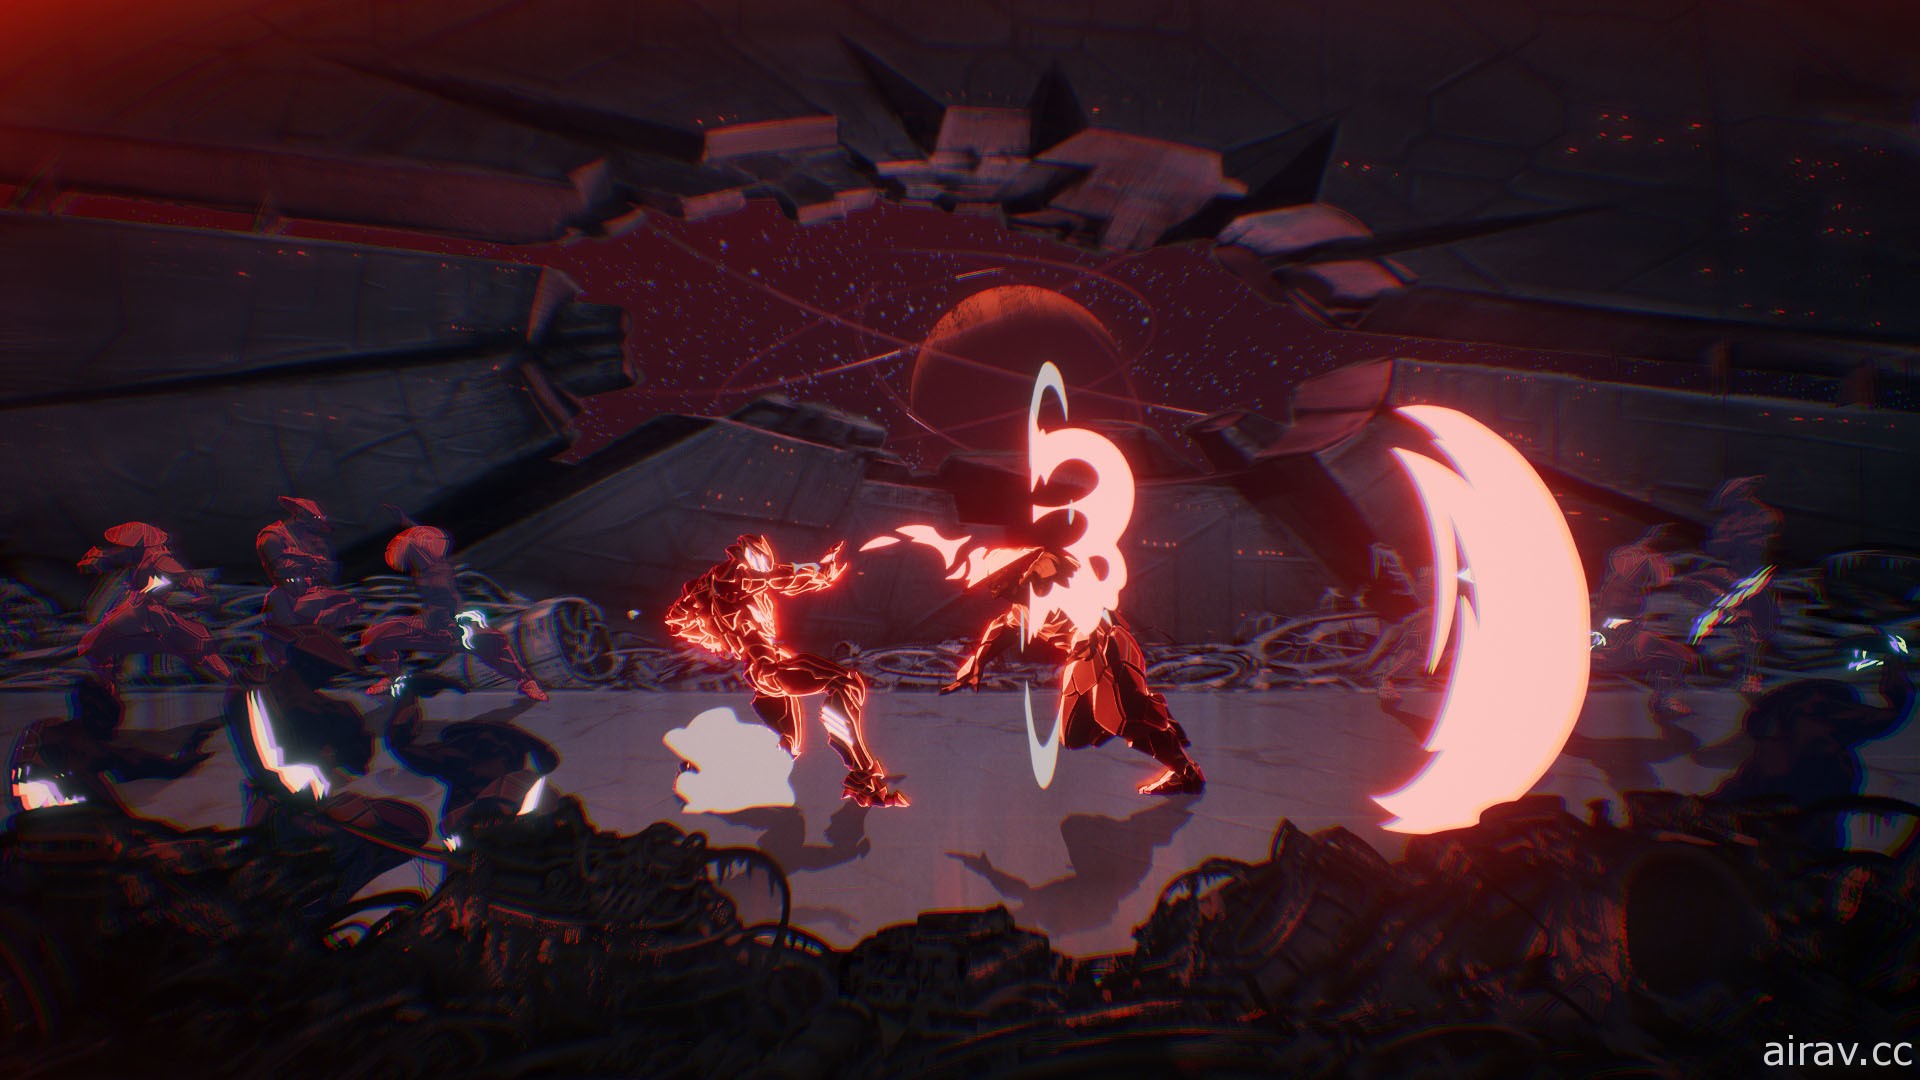 动画风科幻动作游戏《永世大帝必须死》正式发表 与寄生铠甲共同面对各方势力挑战